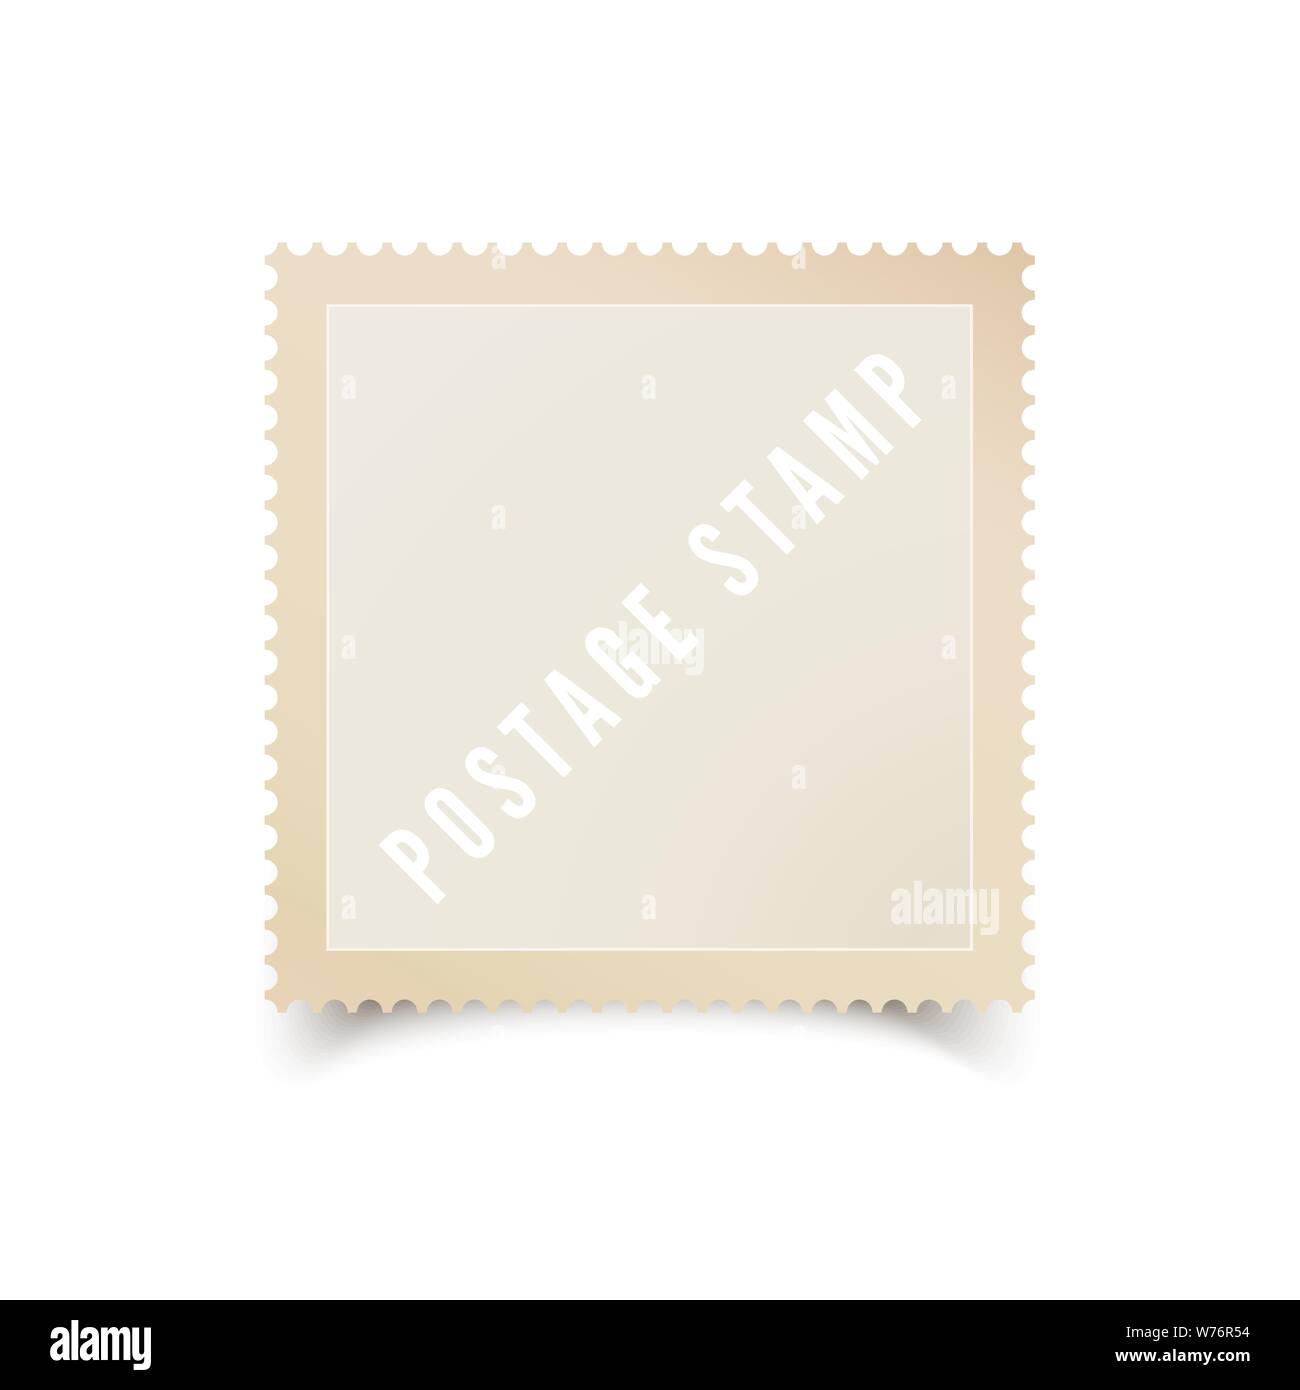 Leere Briefmarke Vorlage mit Schatten. Leere Briefmarke für Ihr Design. Vector Illustration auf weißem Hintergrund Stock Vektor